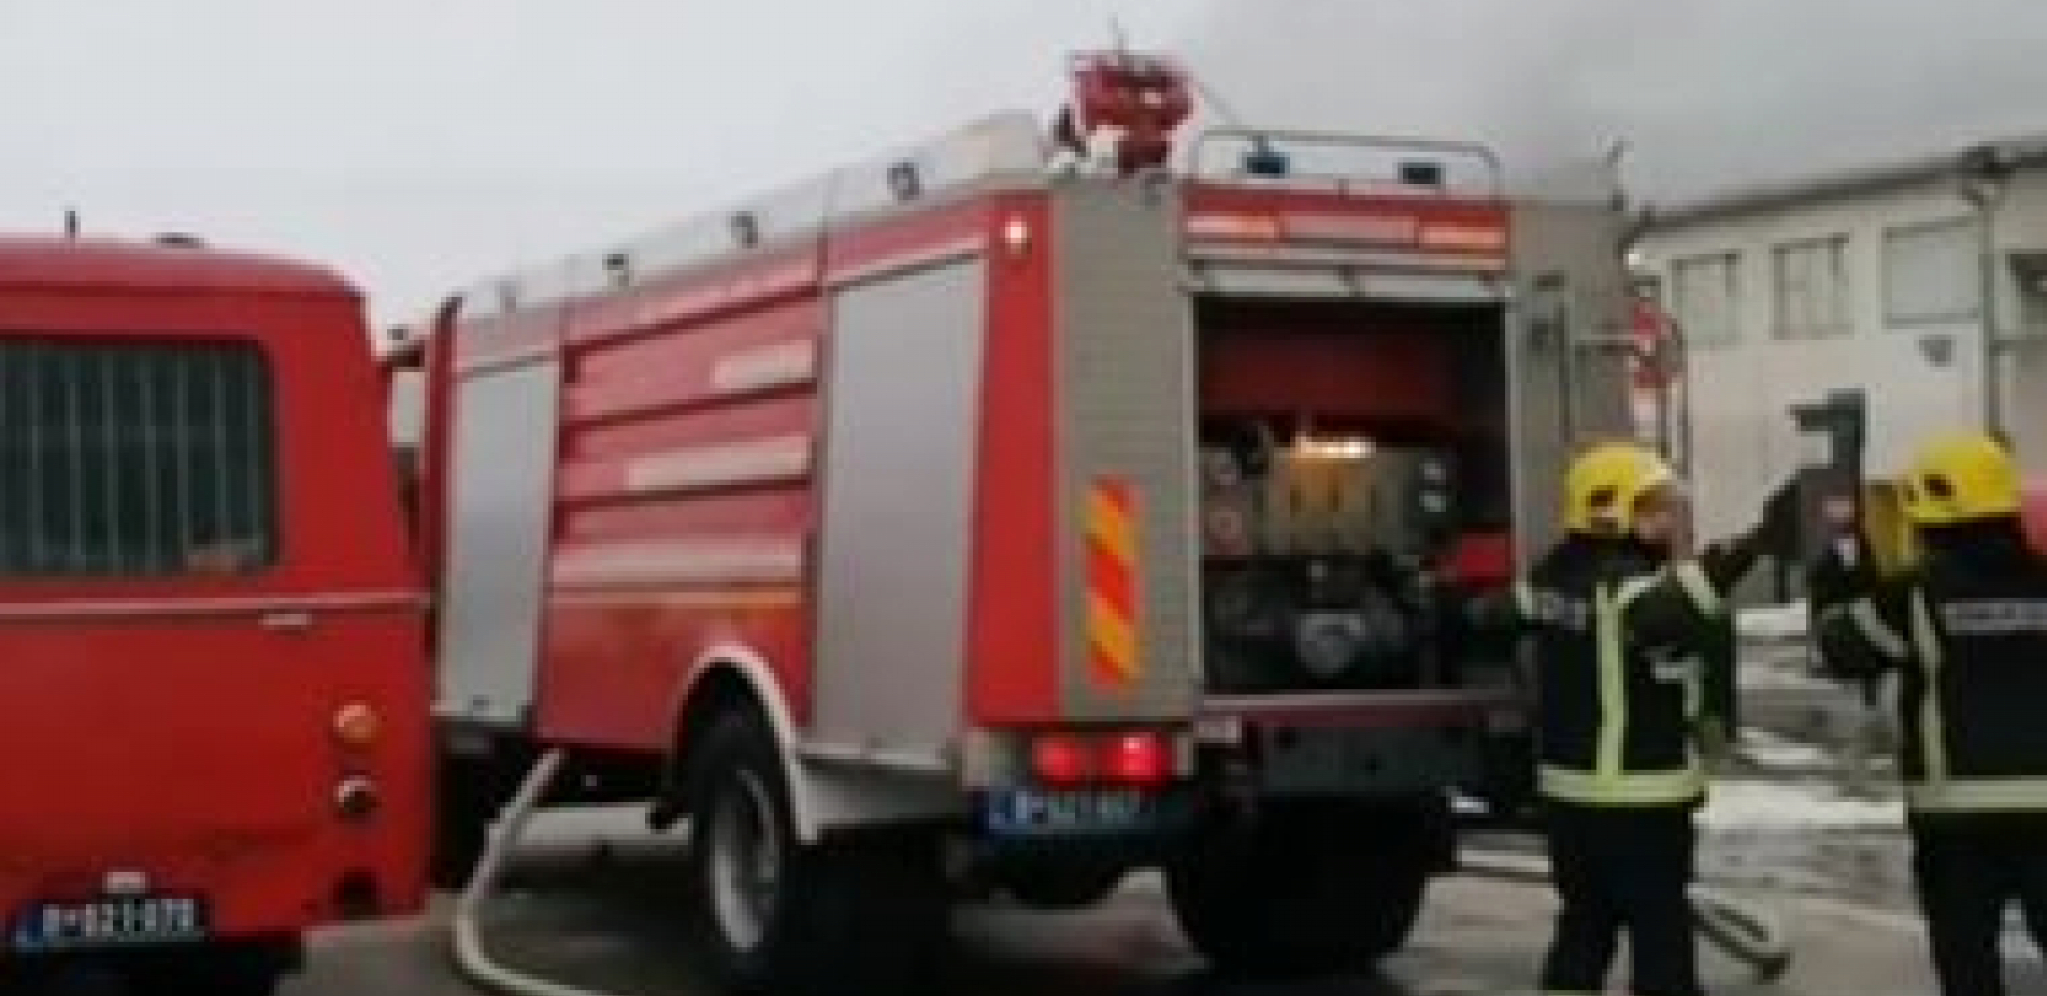 PANIKA ZBOG POŽARA NA NOVOM BEOGRADU Vatrogasci spasili dete sa krova zgrade u napetoj akciji